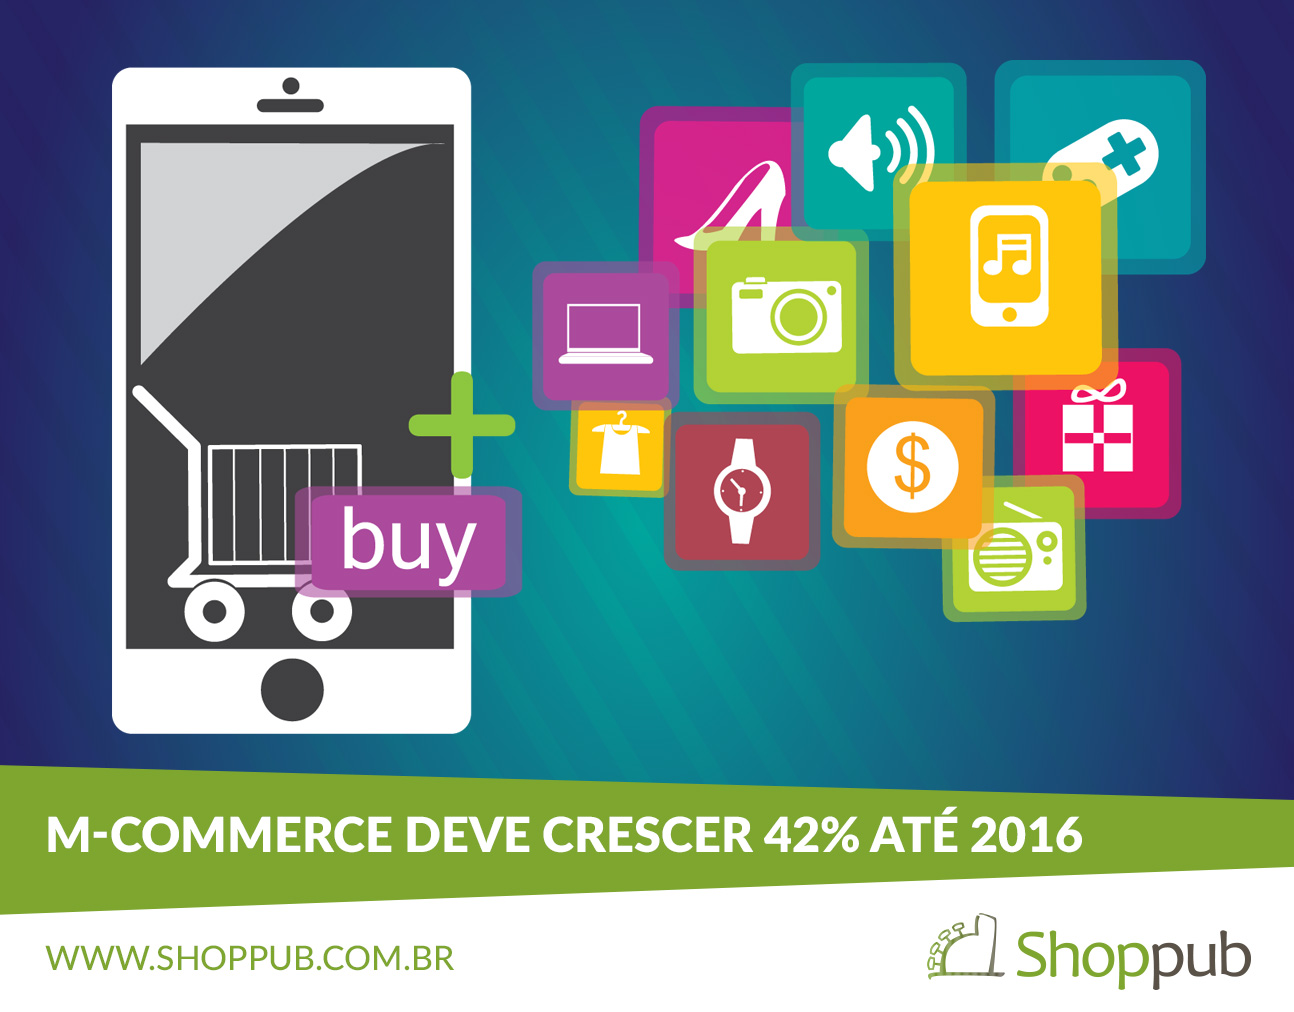 M-commerce deve crescer 42% até 2016